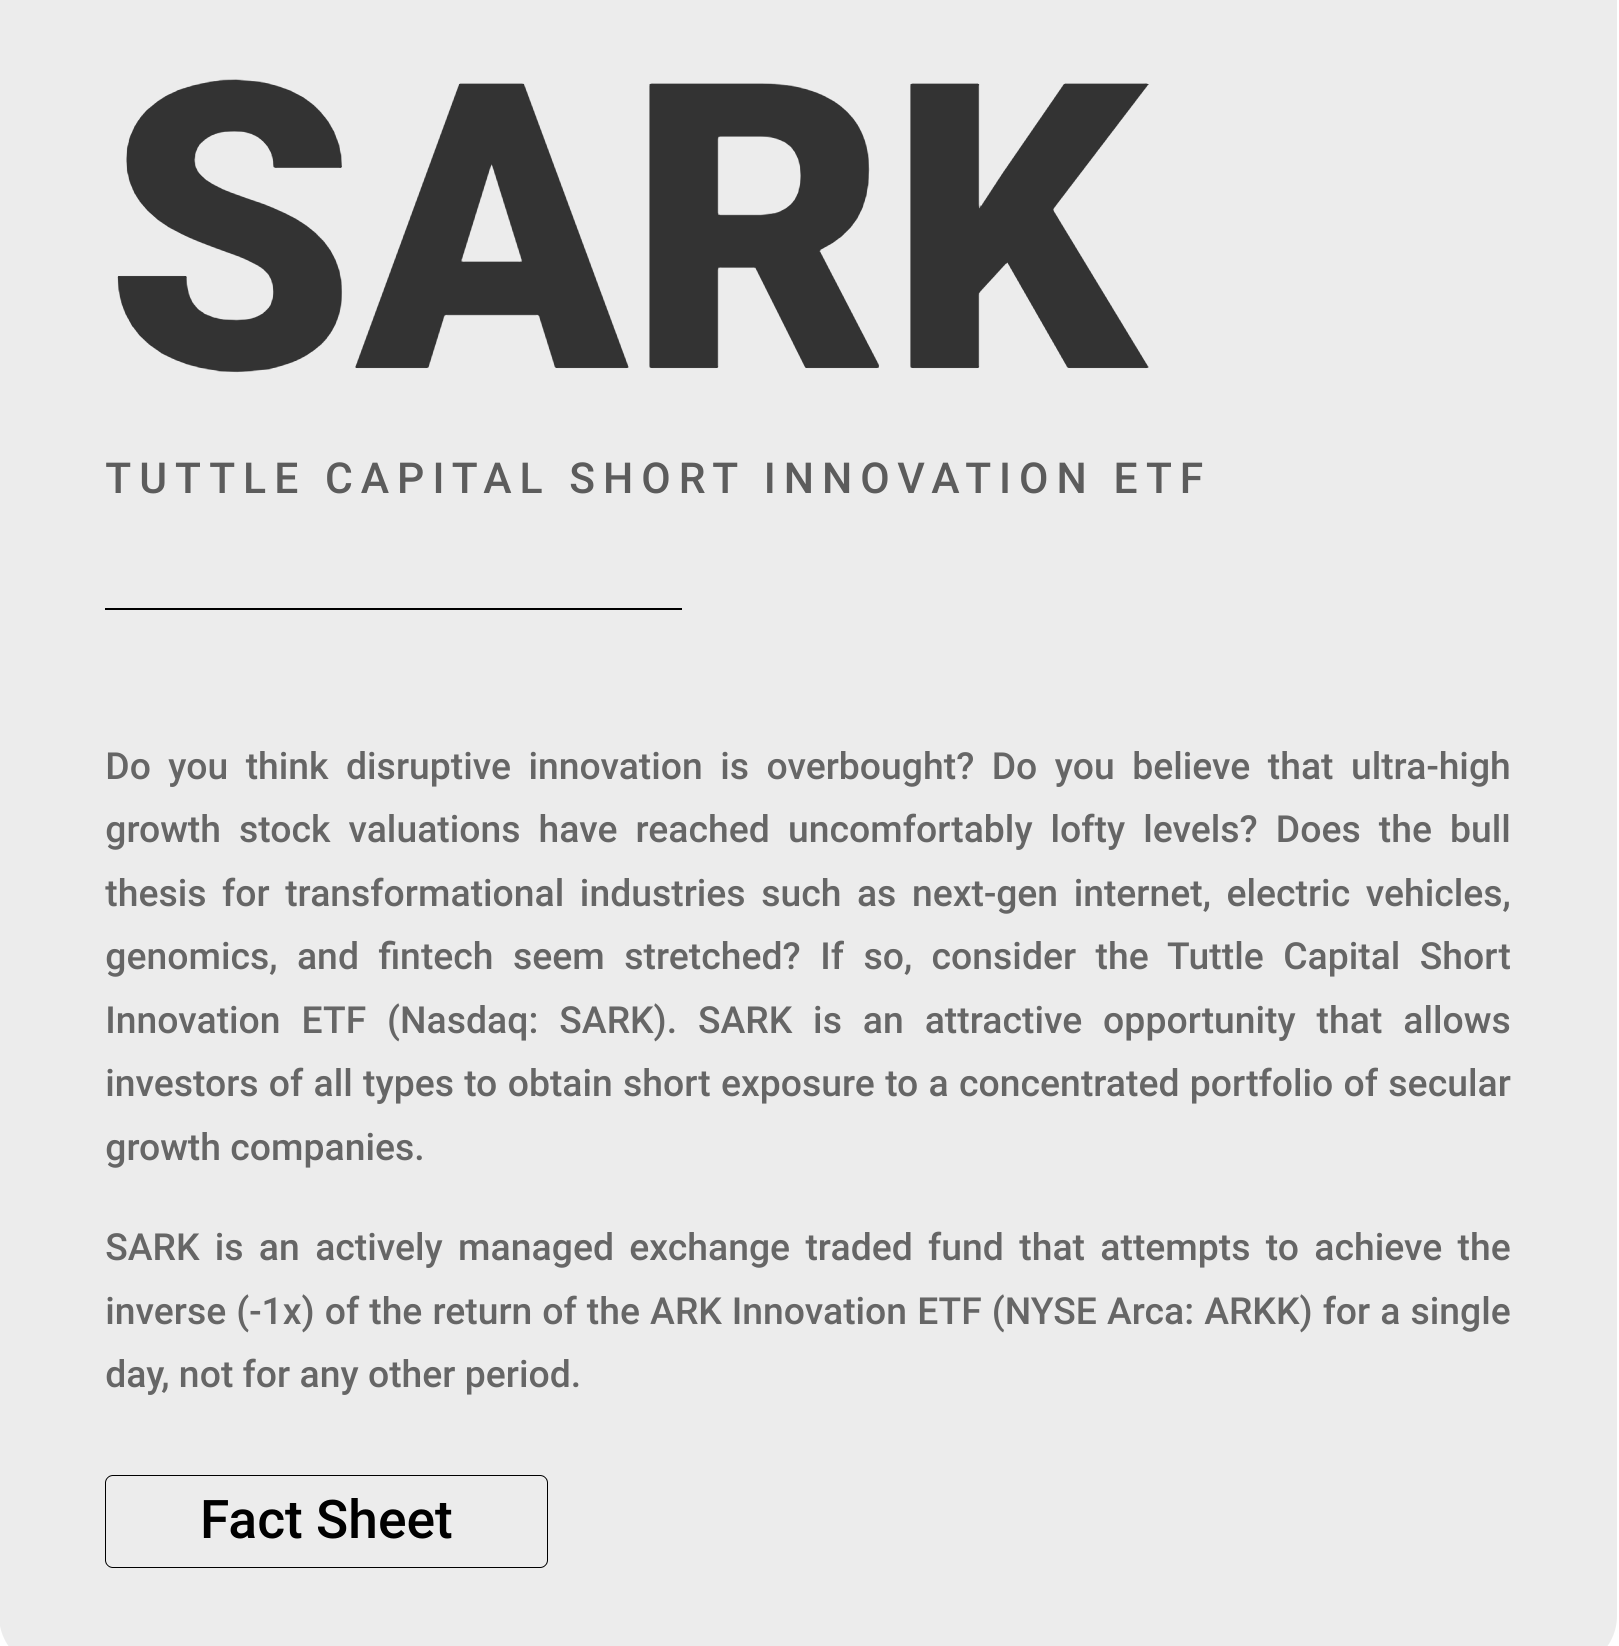 SARK Description